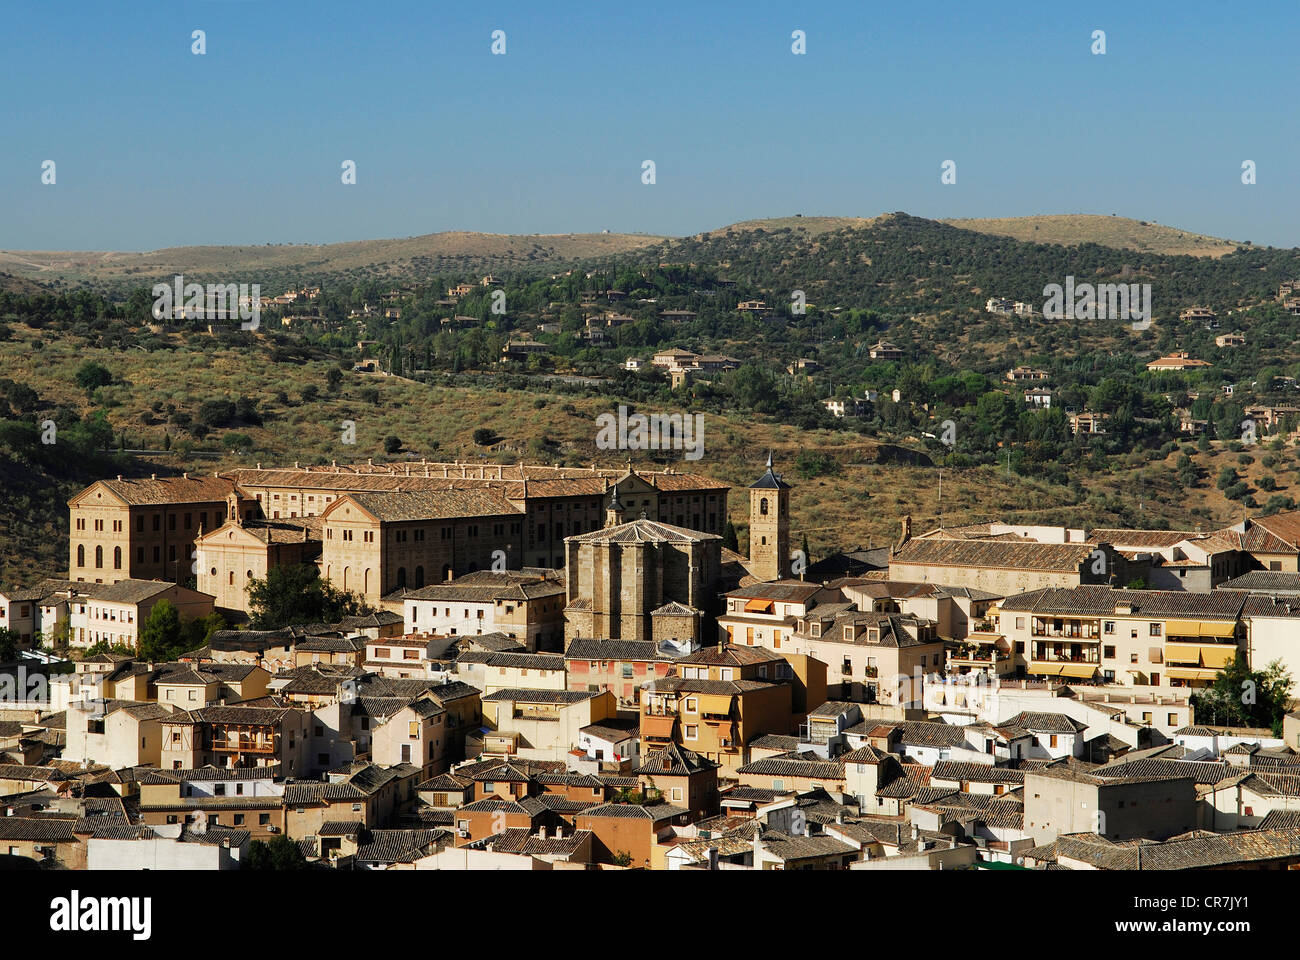 Spagna, Castilla la Mancha, Toledo, storica città patrimonio mondiale dell'UNESCO, il Seminario Mayor, seminario costruito nel 1830, e la Foto Stock